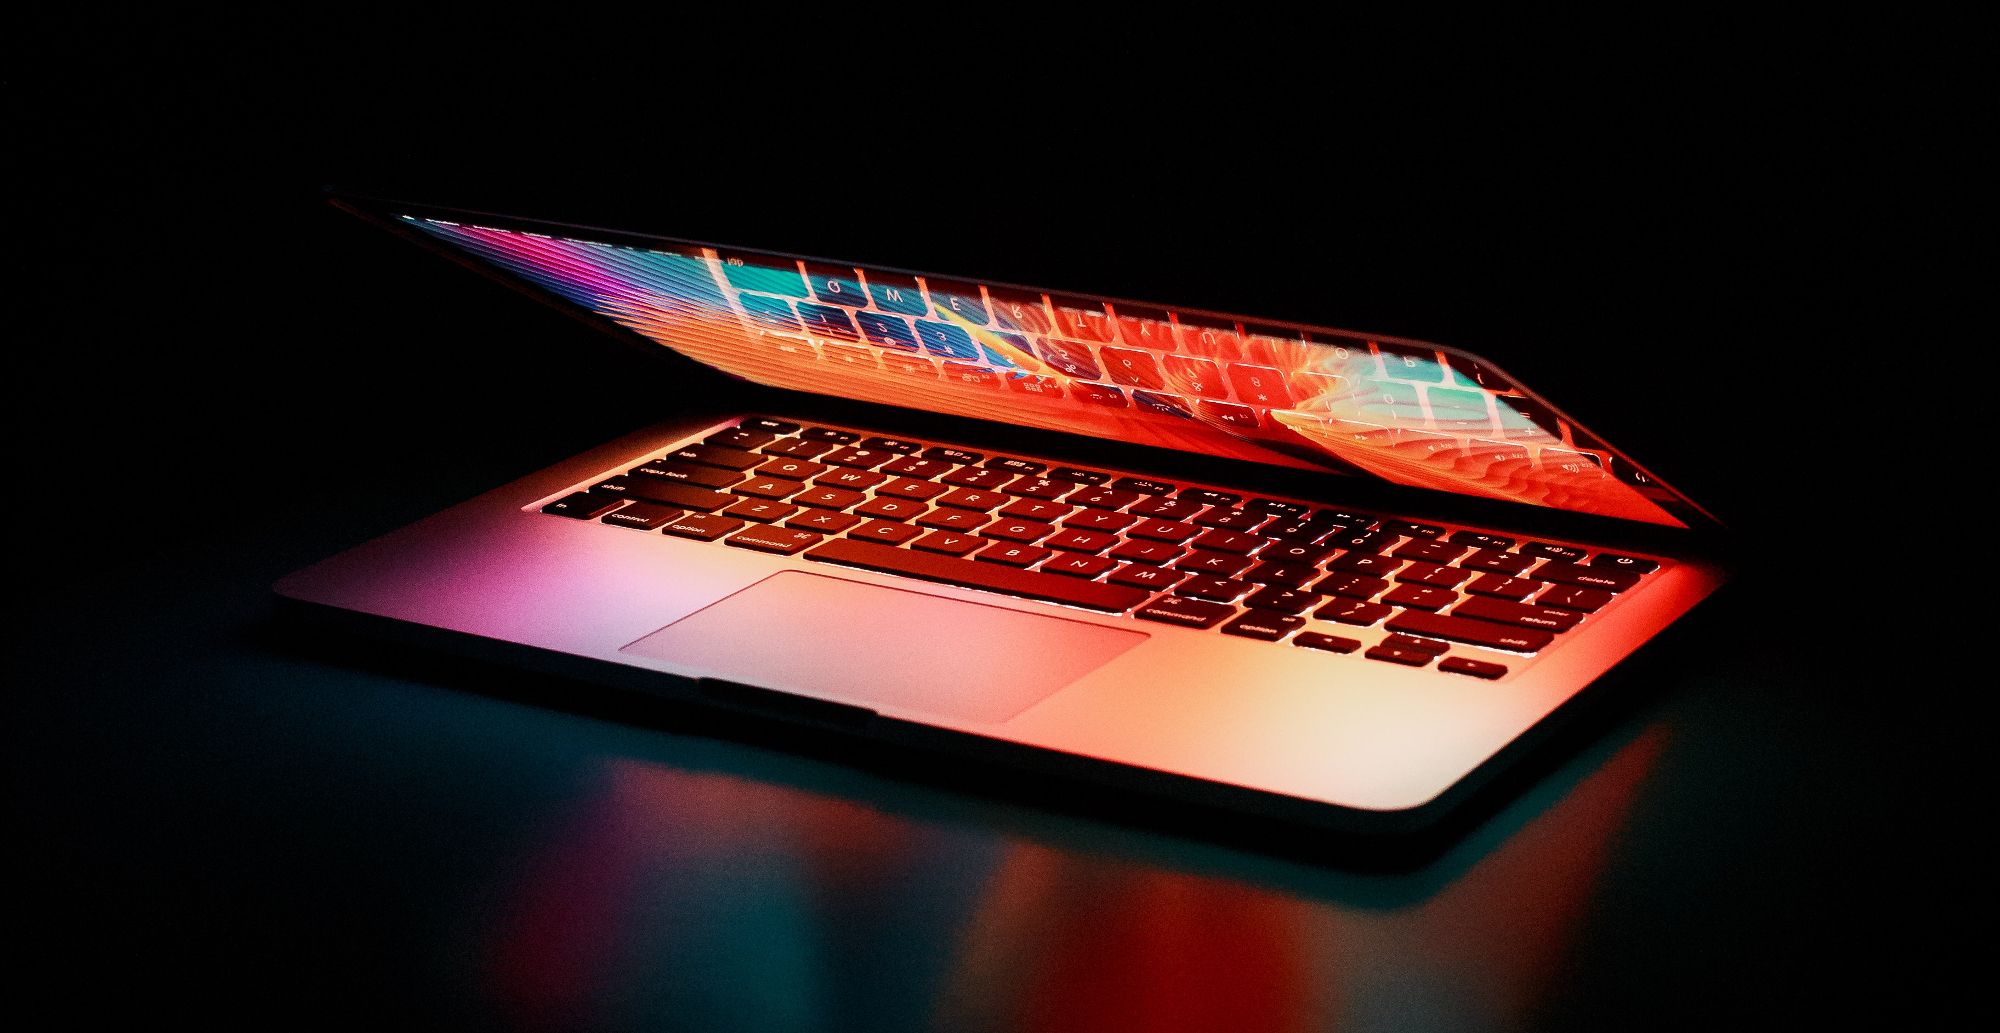 lit up laptop screen in dark room